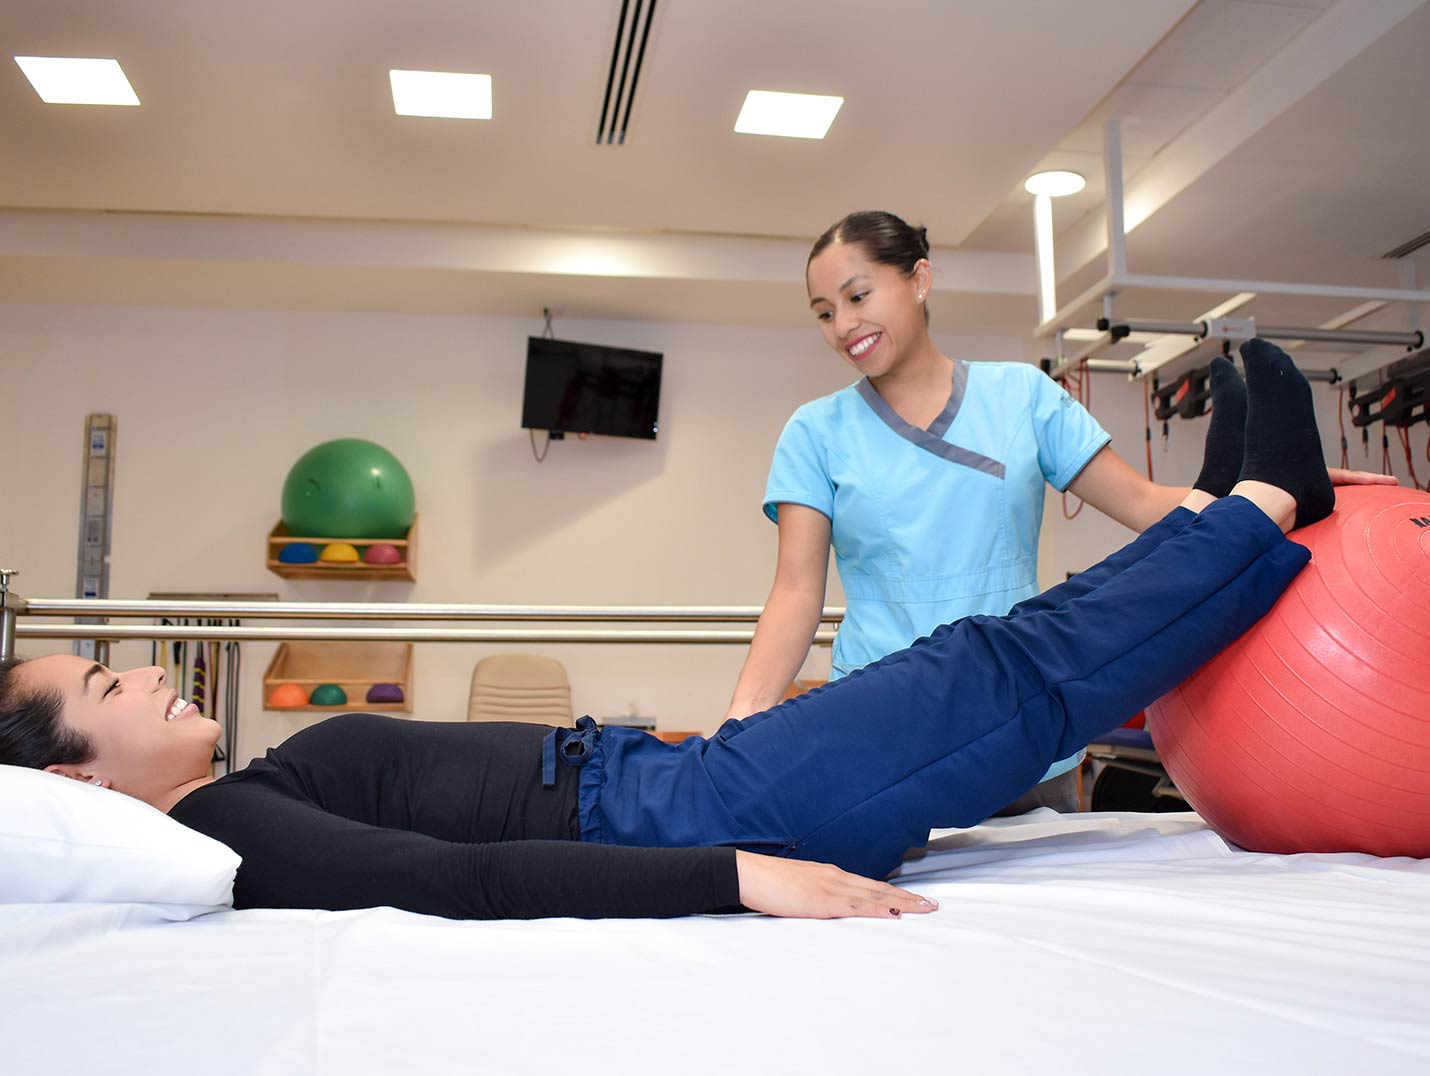 Paciente con playera negra y pantalon azul recostada sobre una cama y con los pies encima de una pelota junto a su rehabilitadora.